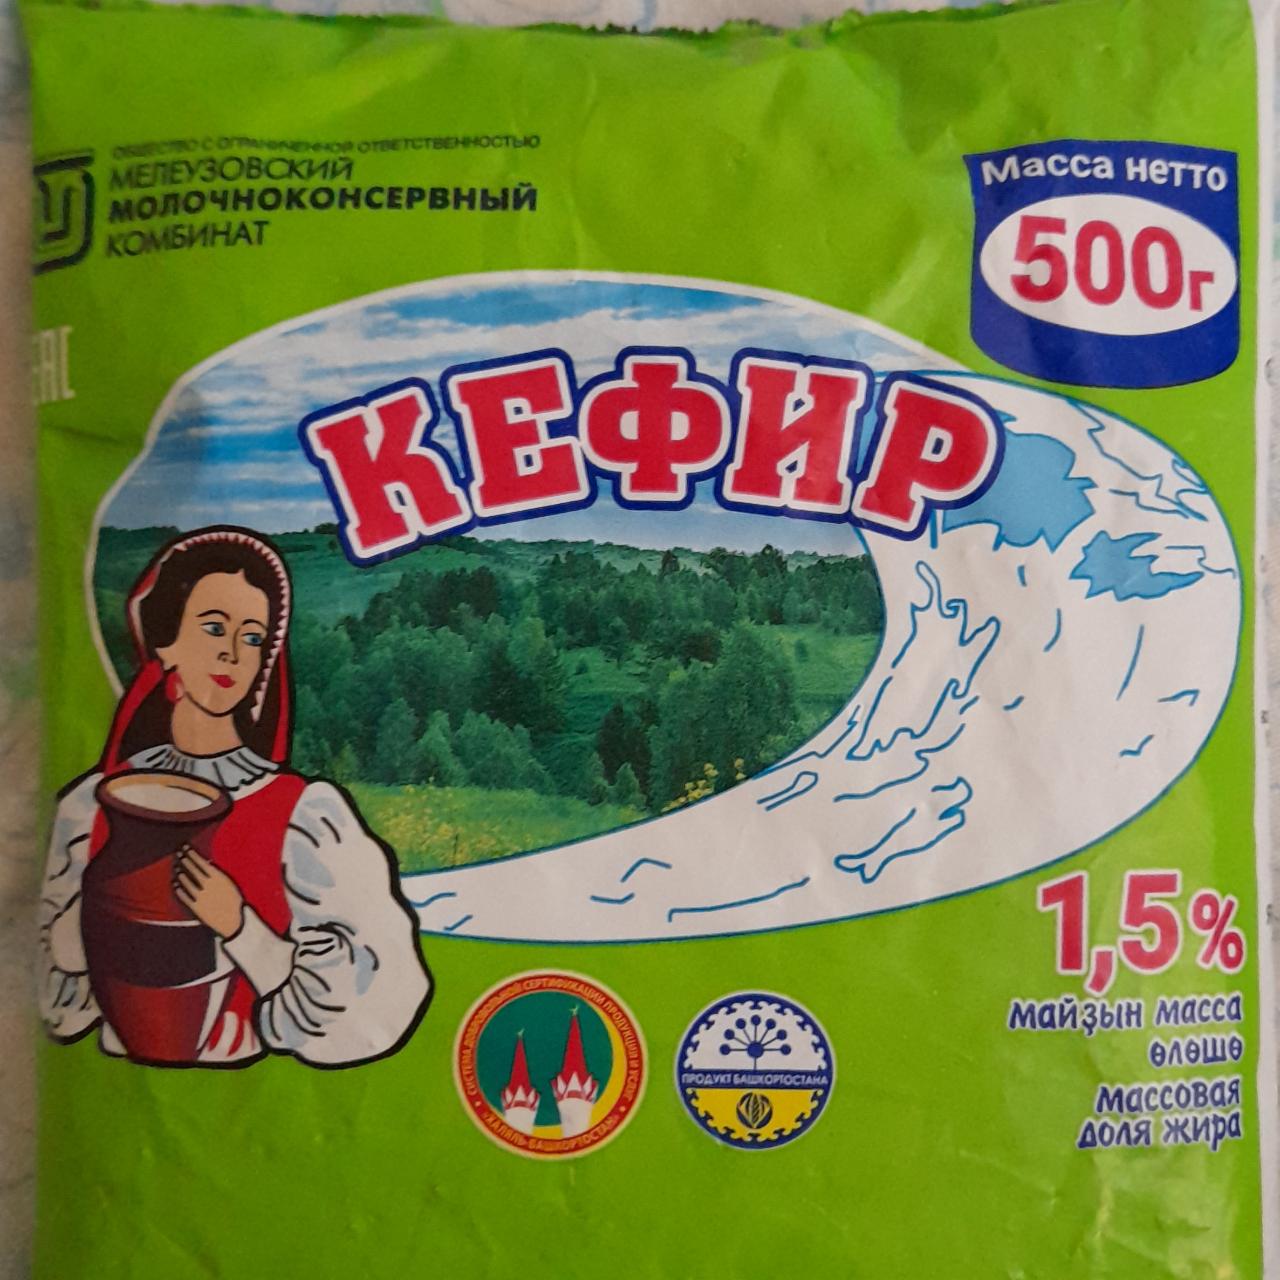 Фото - Кефир 1.5% Мелеузовский молочноконсервный комбинат